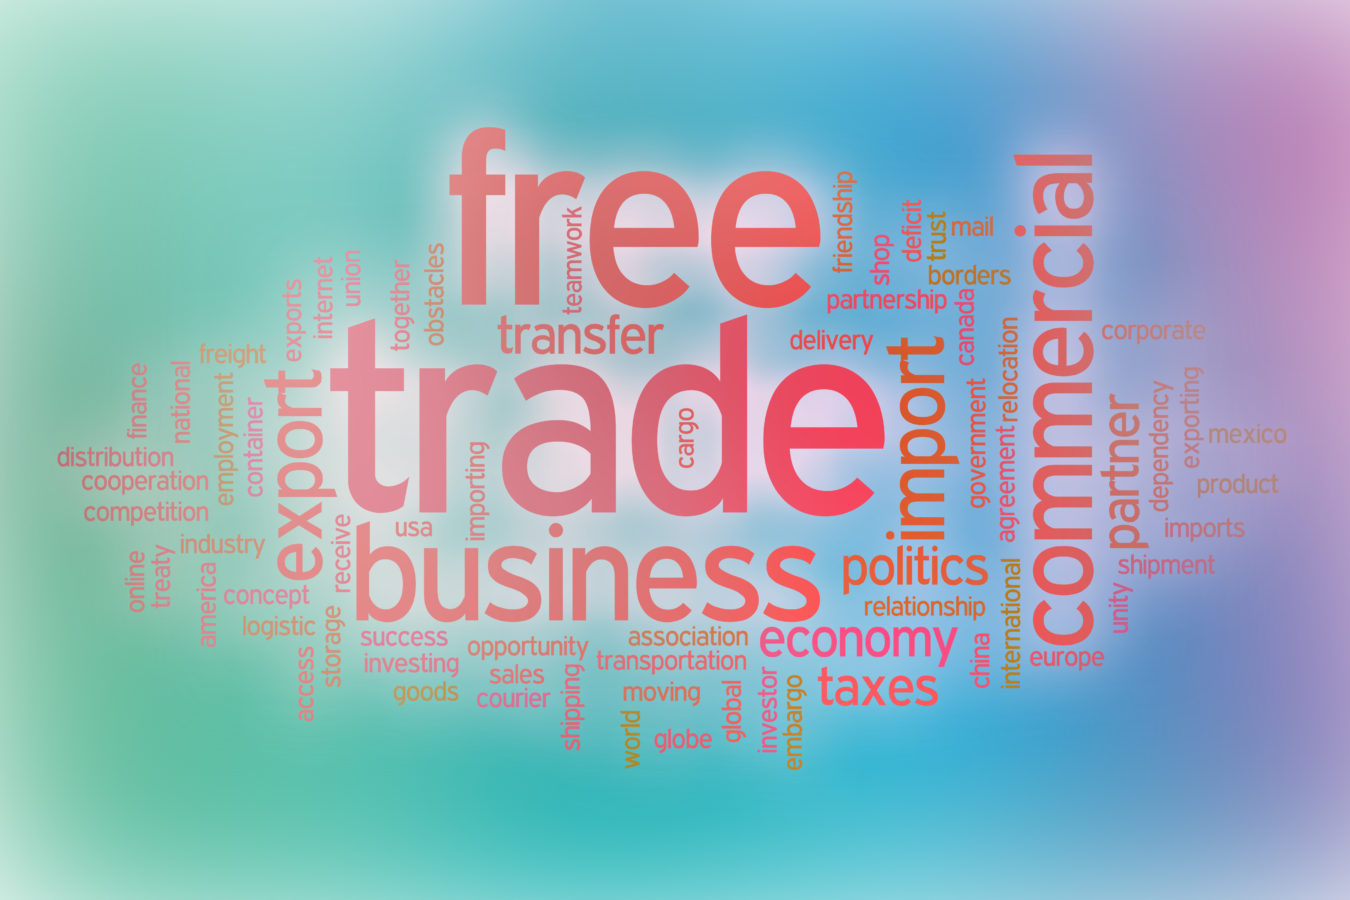 L’importance du libre-échange pour améliorer la compétitivité de l’économie européenne